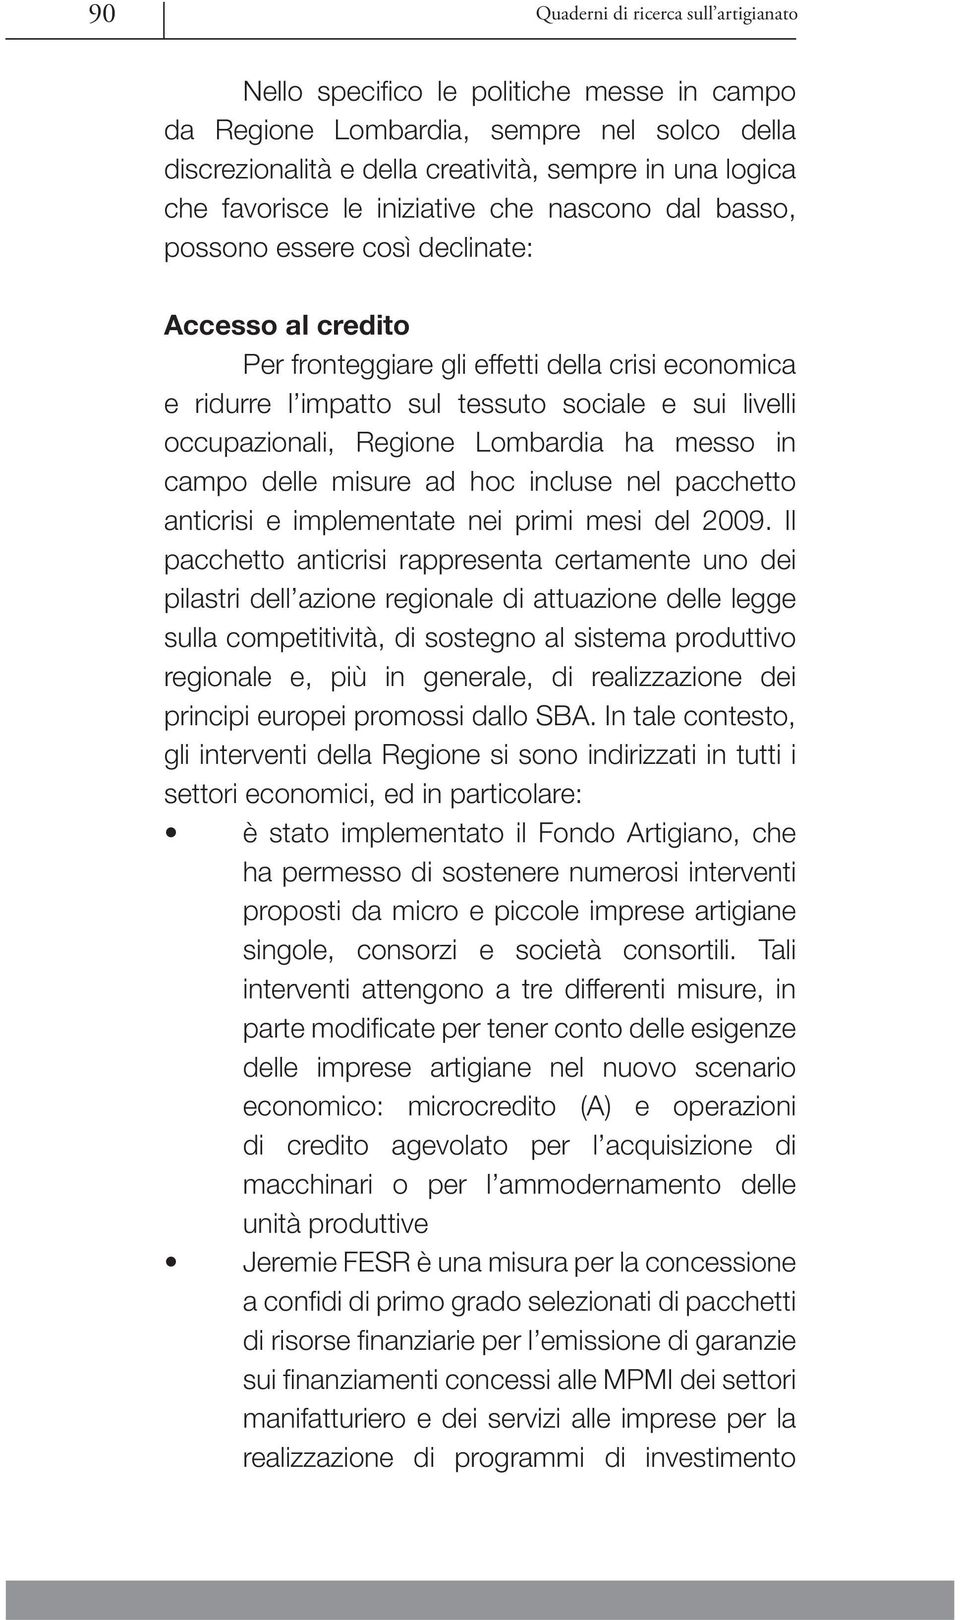 livelli occupazionali, Regione Lombardia ha messo in campo delle misure ad hoc incluse nel pacchetto anticrisi e implementate nei primi mesi del 2009.